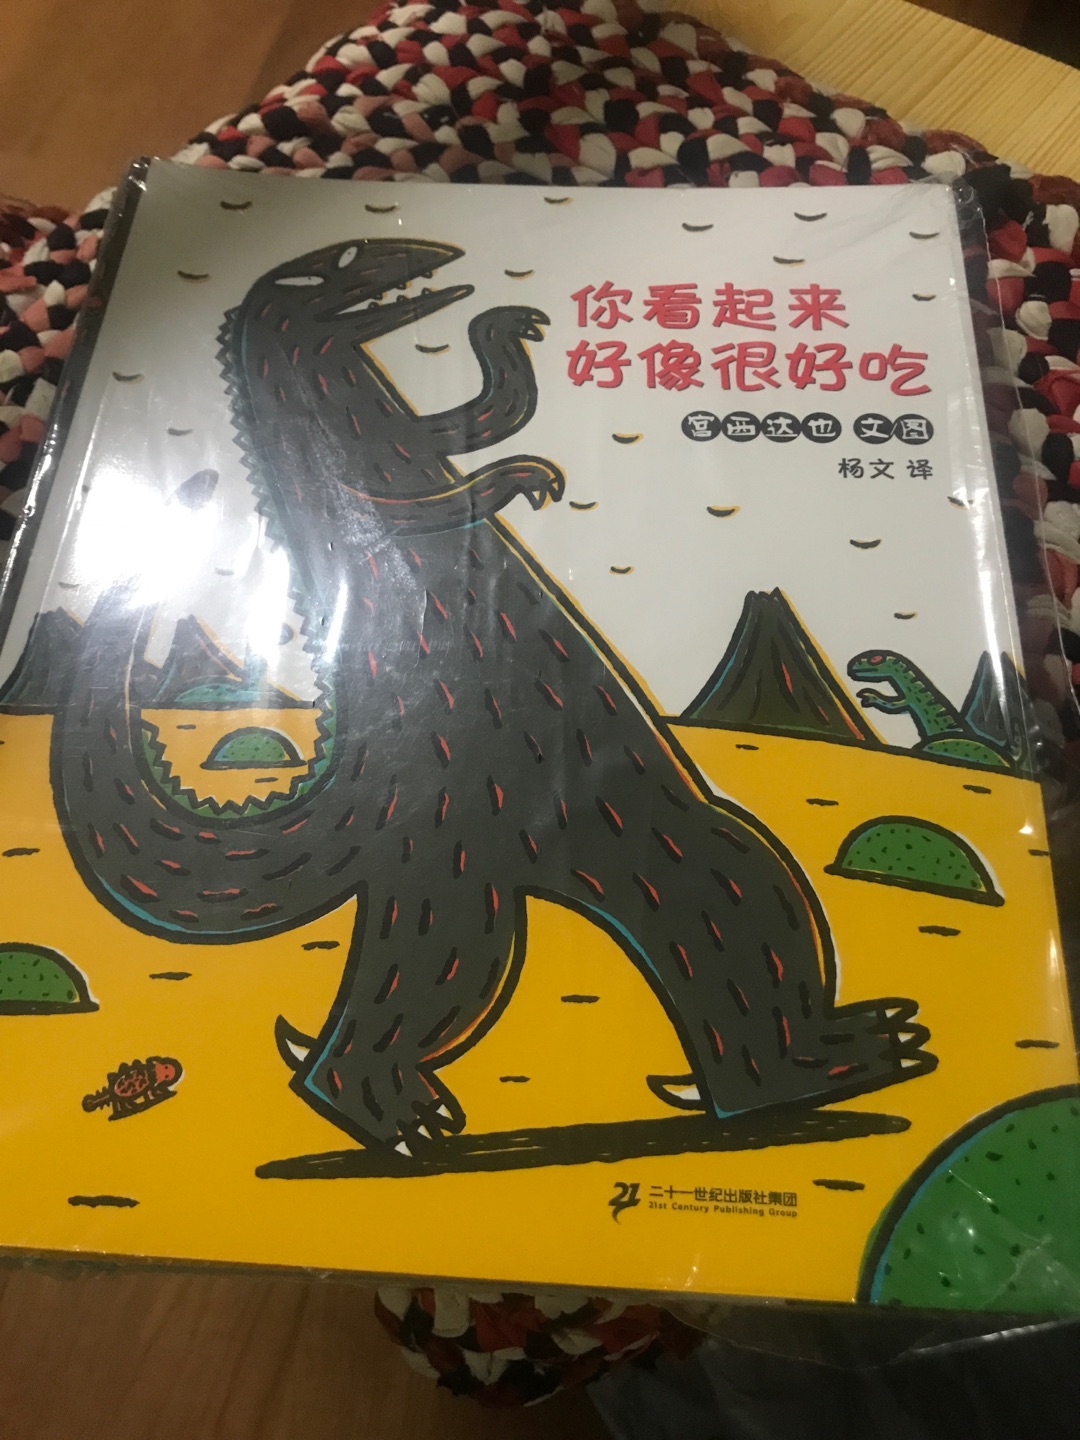 宫西达也的书很经典，很适合学龄前的孩子阅读。主题也是孩子喜欢的恐龙系列。